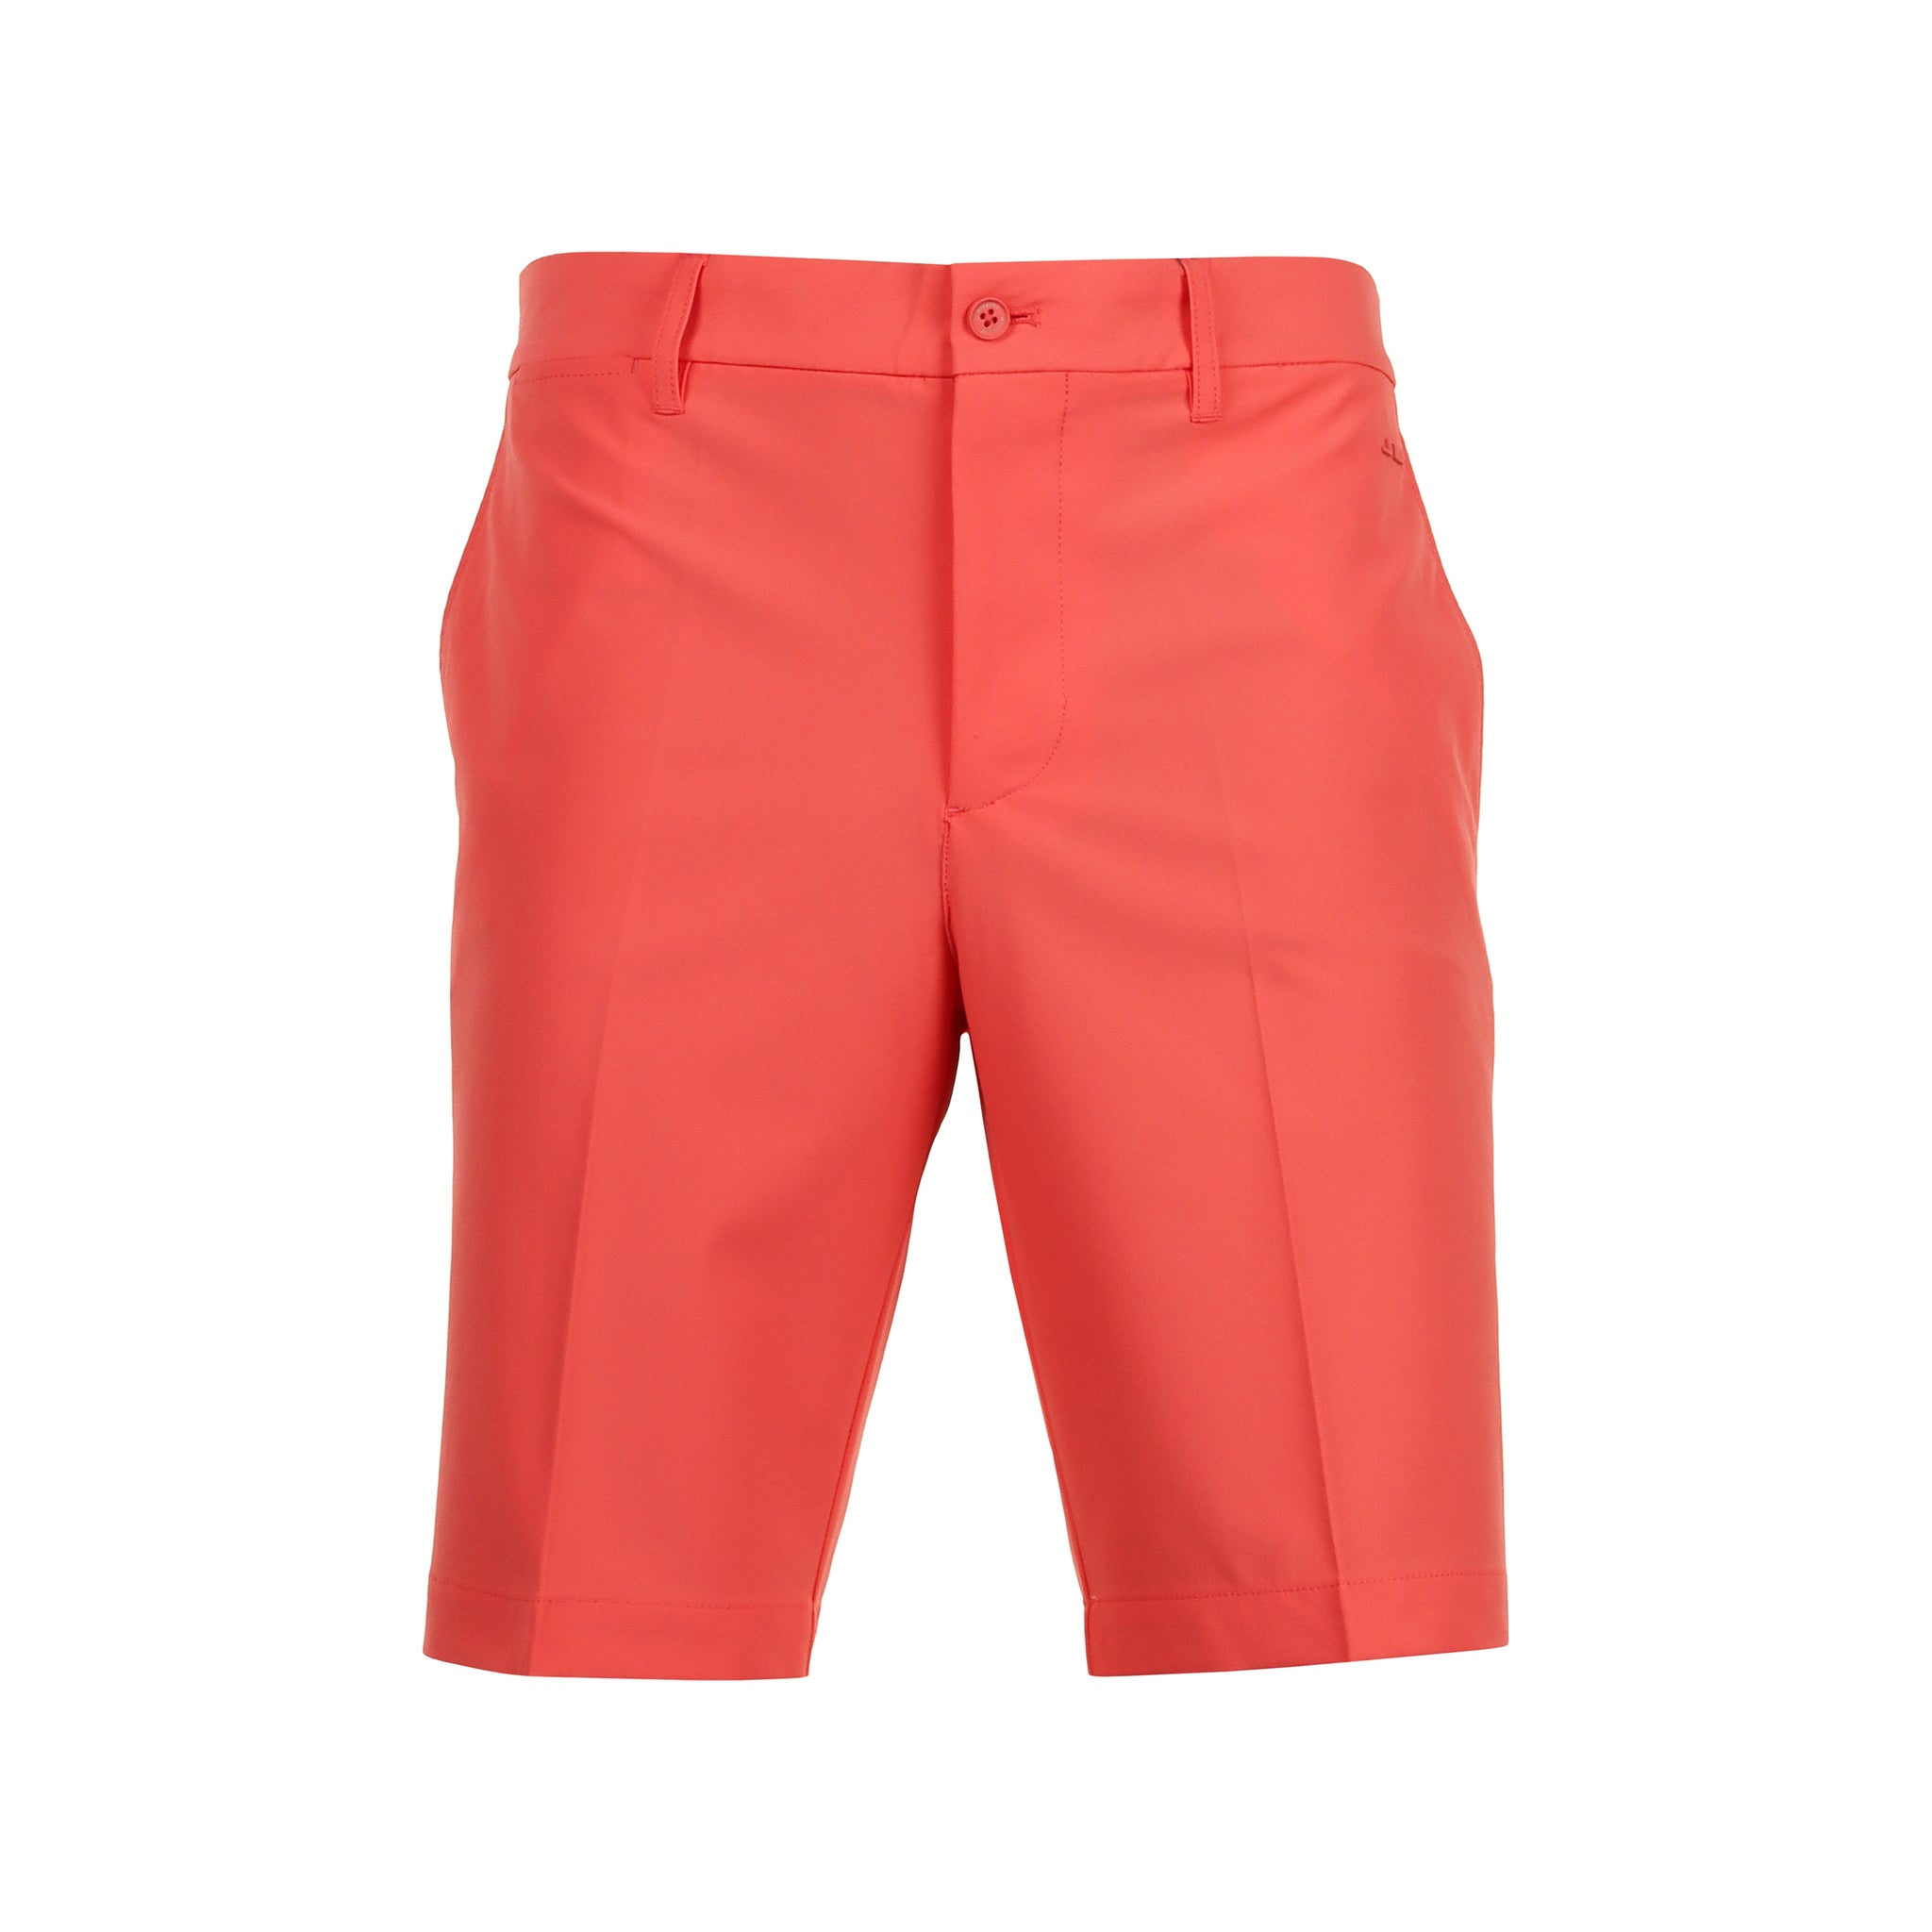 j-lindeberg-golf-eloy-shorts-gmpa10121-hot-coral-g050